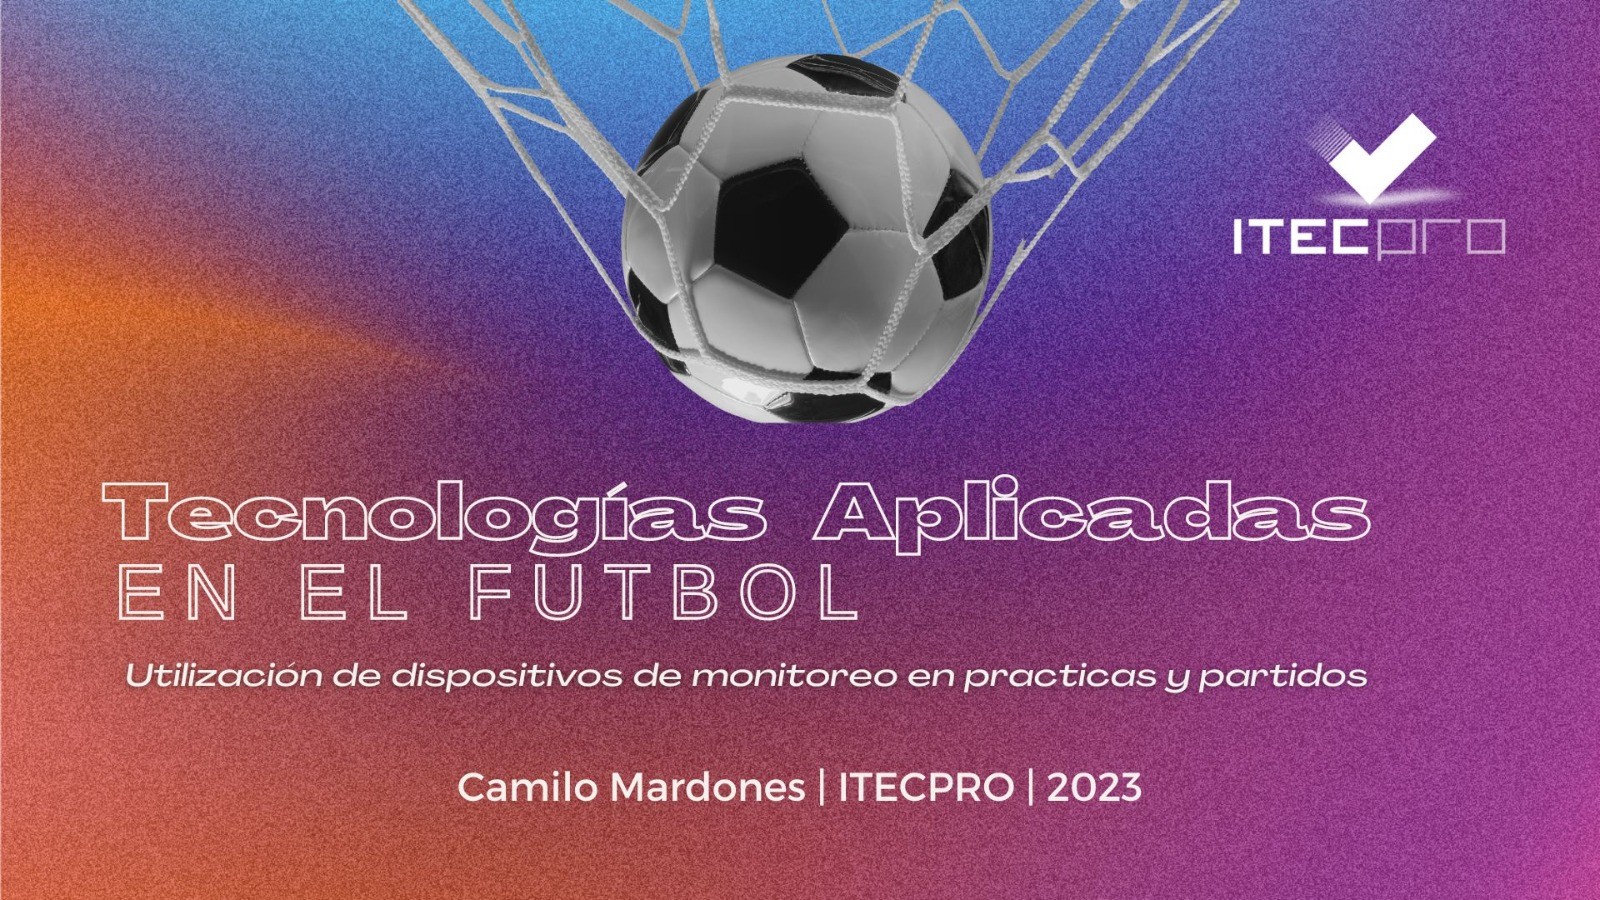 Tecnologías Aplicadas en el Fútbol, utilización de dispositivos de monitoreo en prácticas y partidos